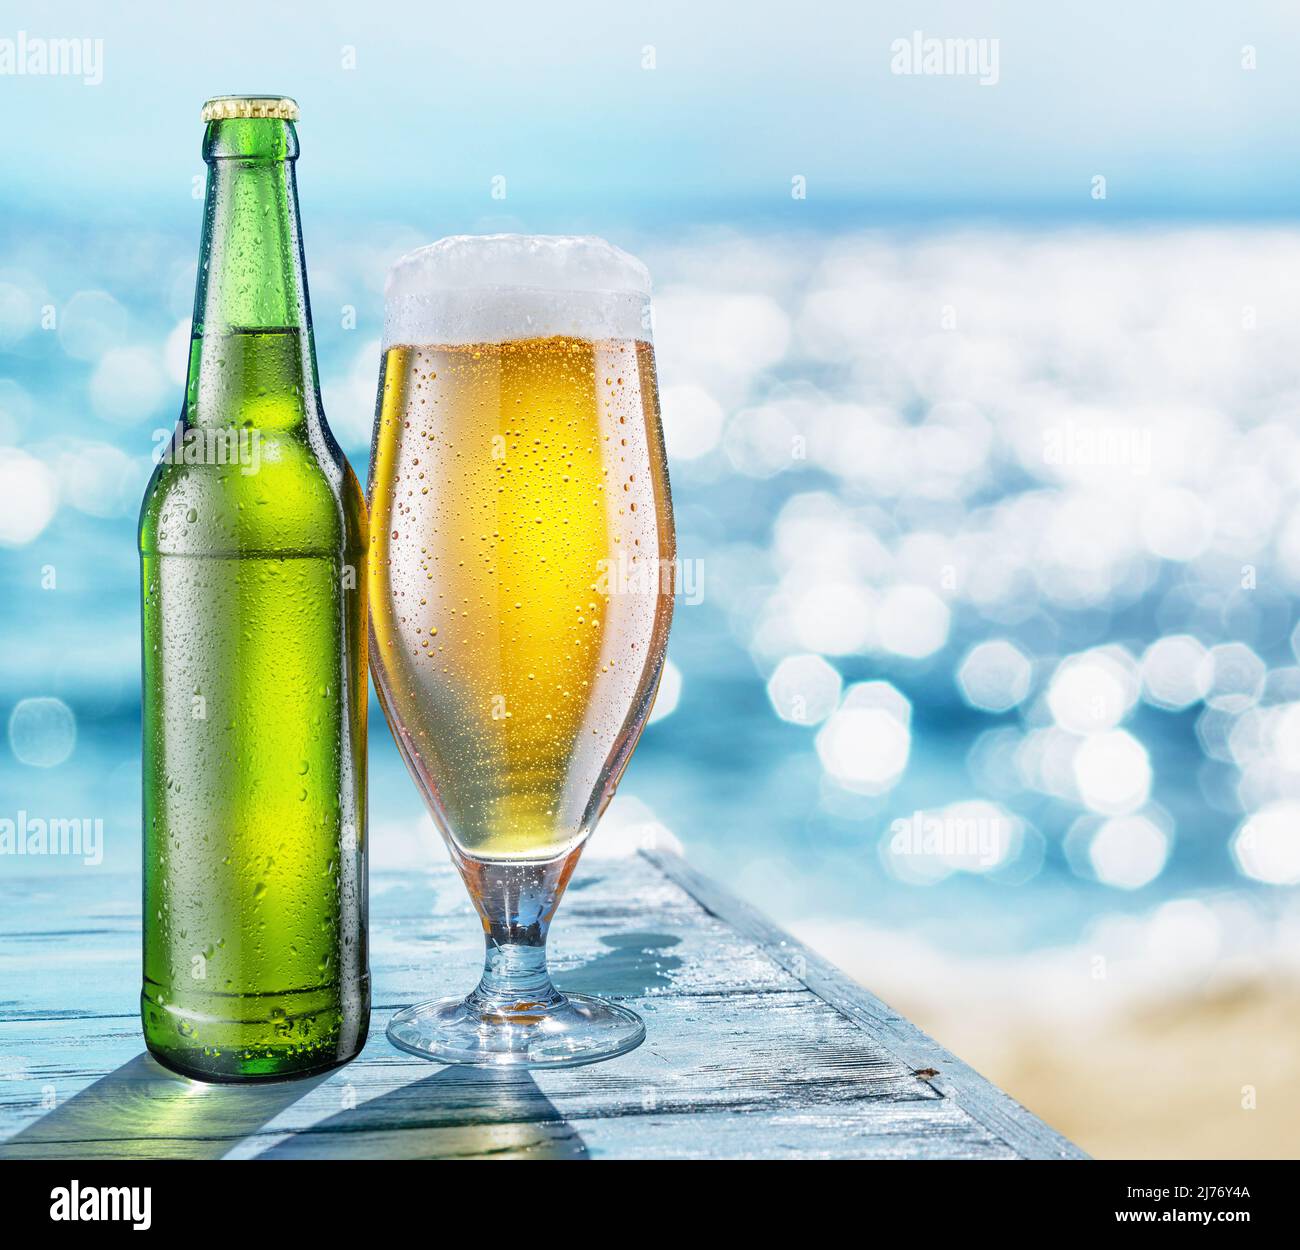 Flasche Bier und Bierglas mit Kondenswasser auf dem Holztisch. Verschwommenes glitzerndes Meer im Hintergrund. Sommerliche Stimmung. Stockfoto